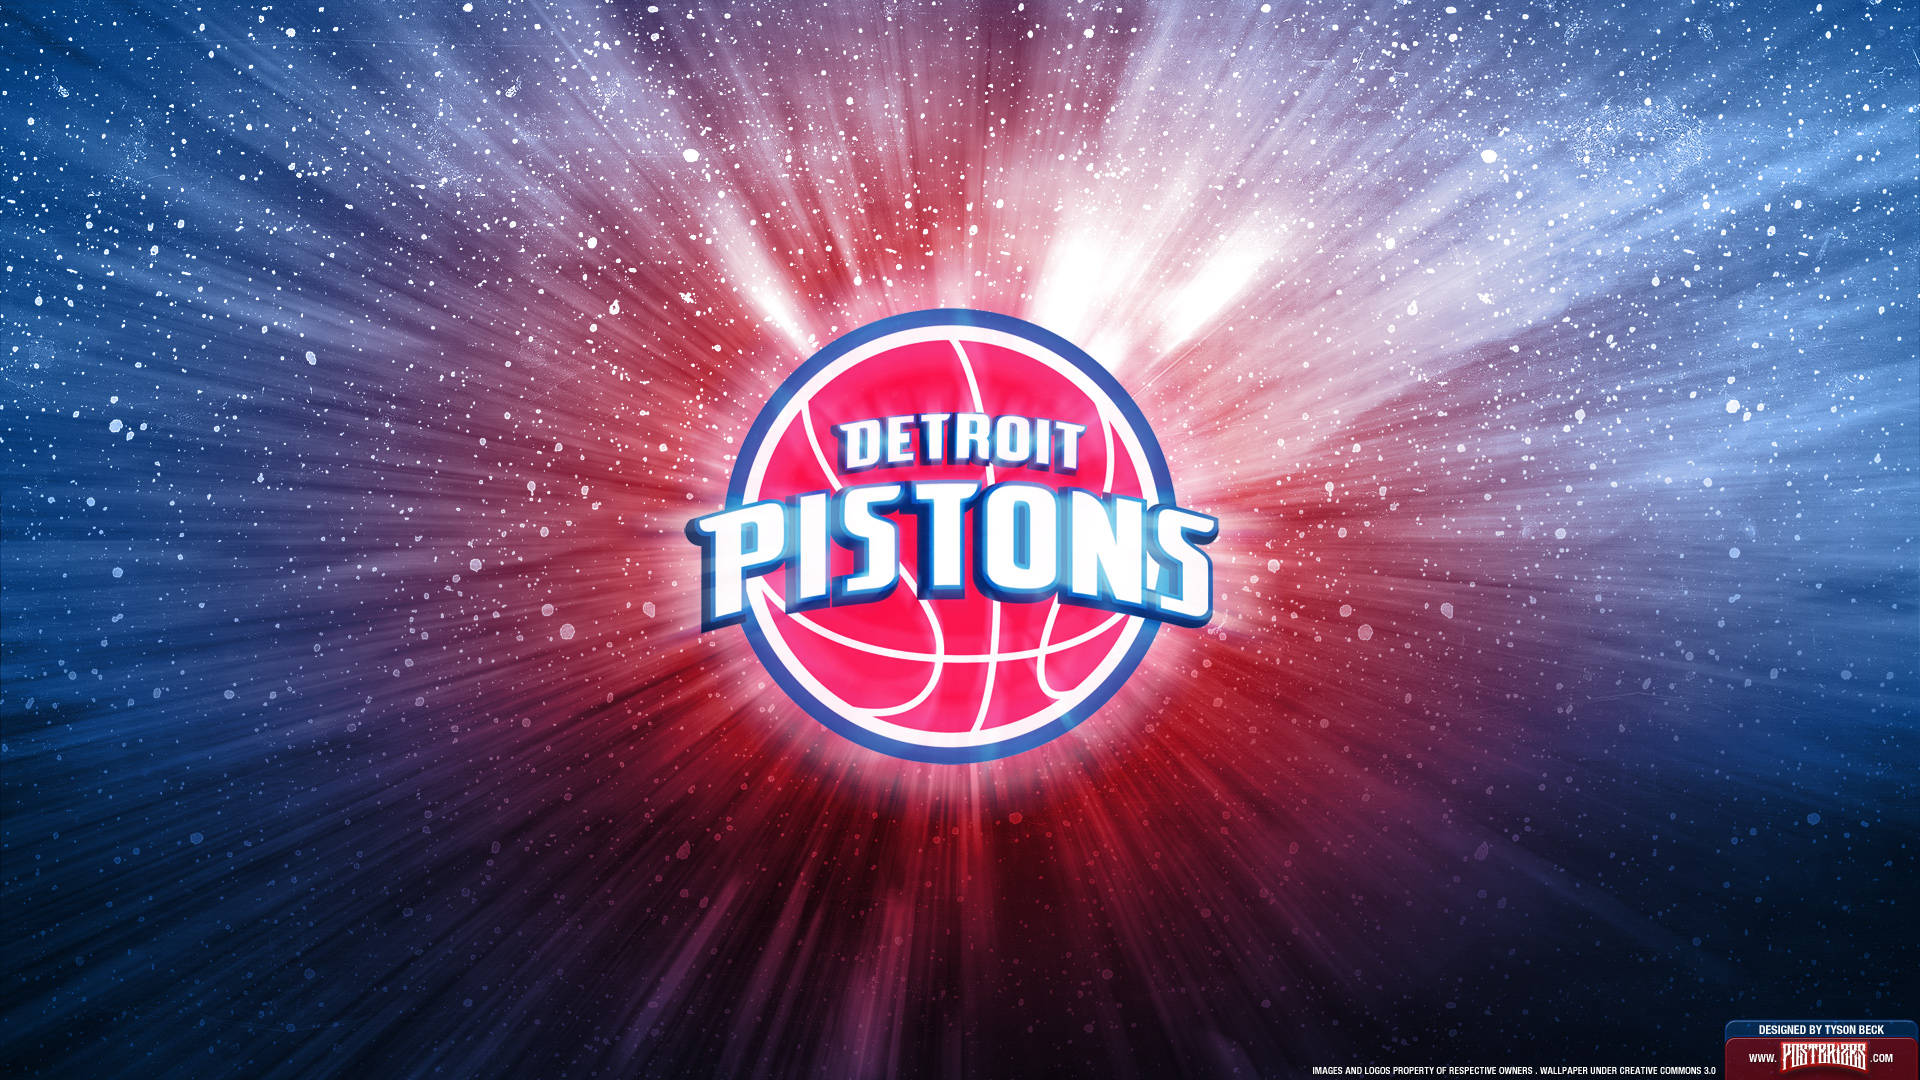 Detroit Pistons Basketball Team Wallpaper